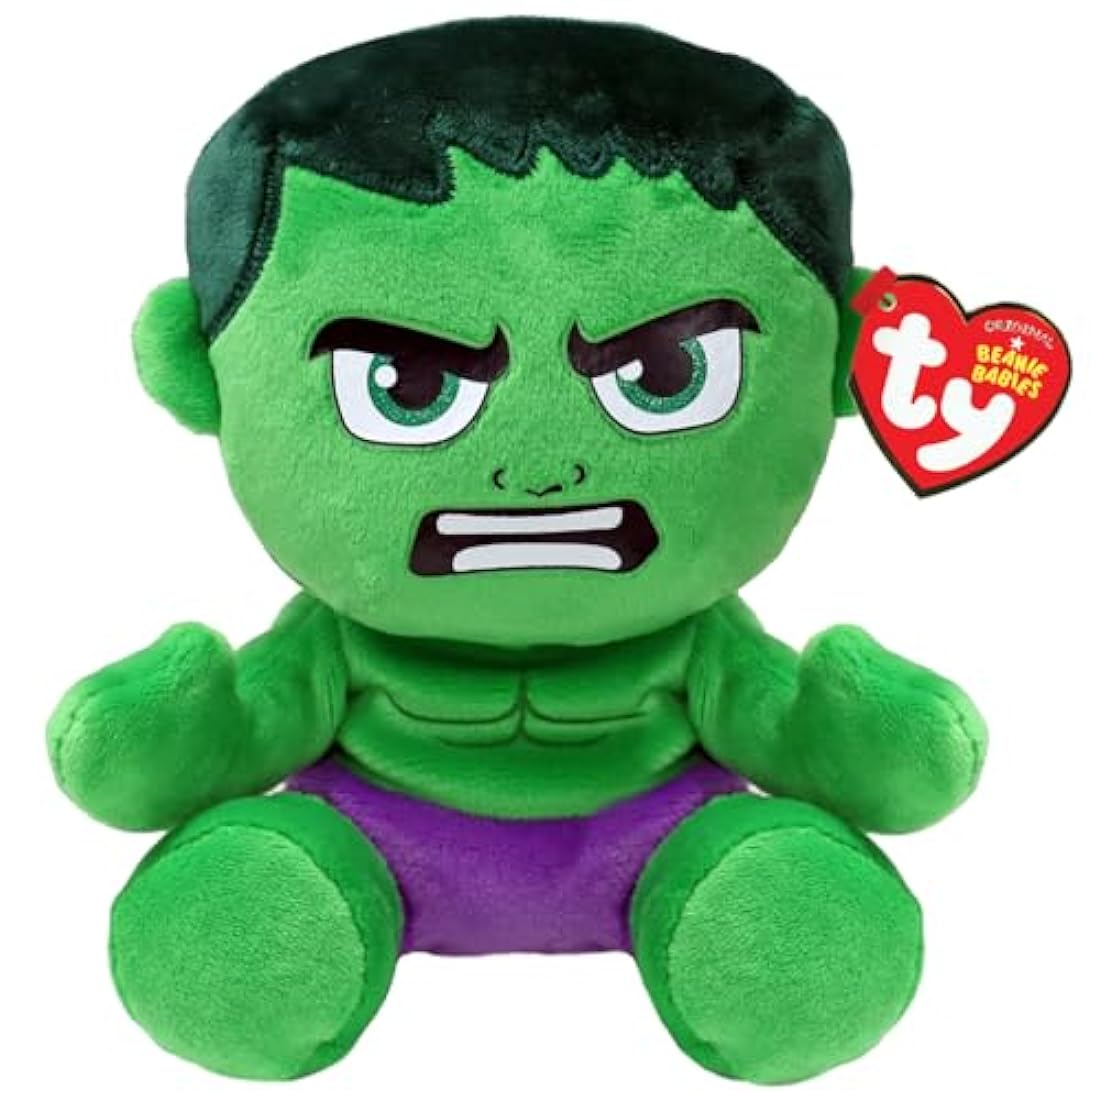 Ty Beanie Baby Marvel Super Heroes Hulk 7.5" Floppy Plush